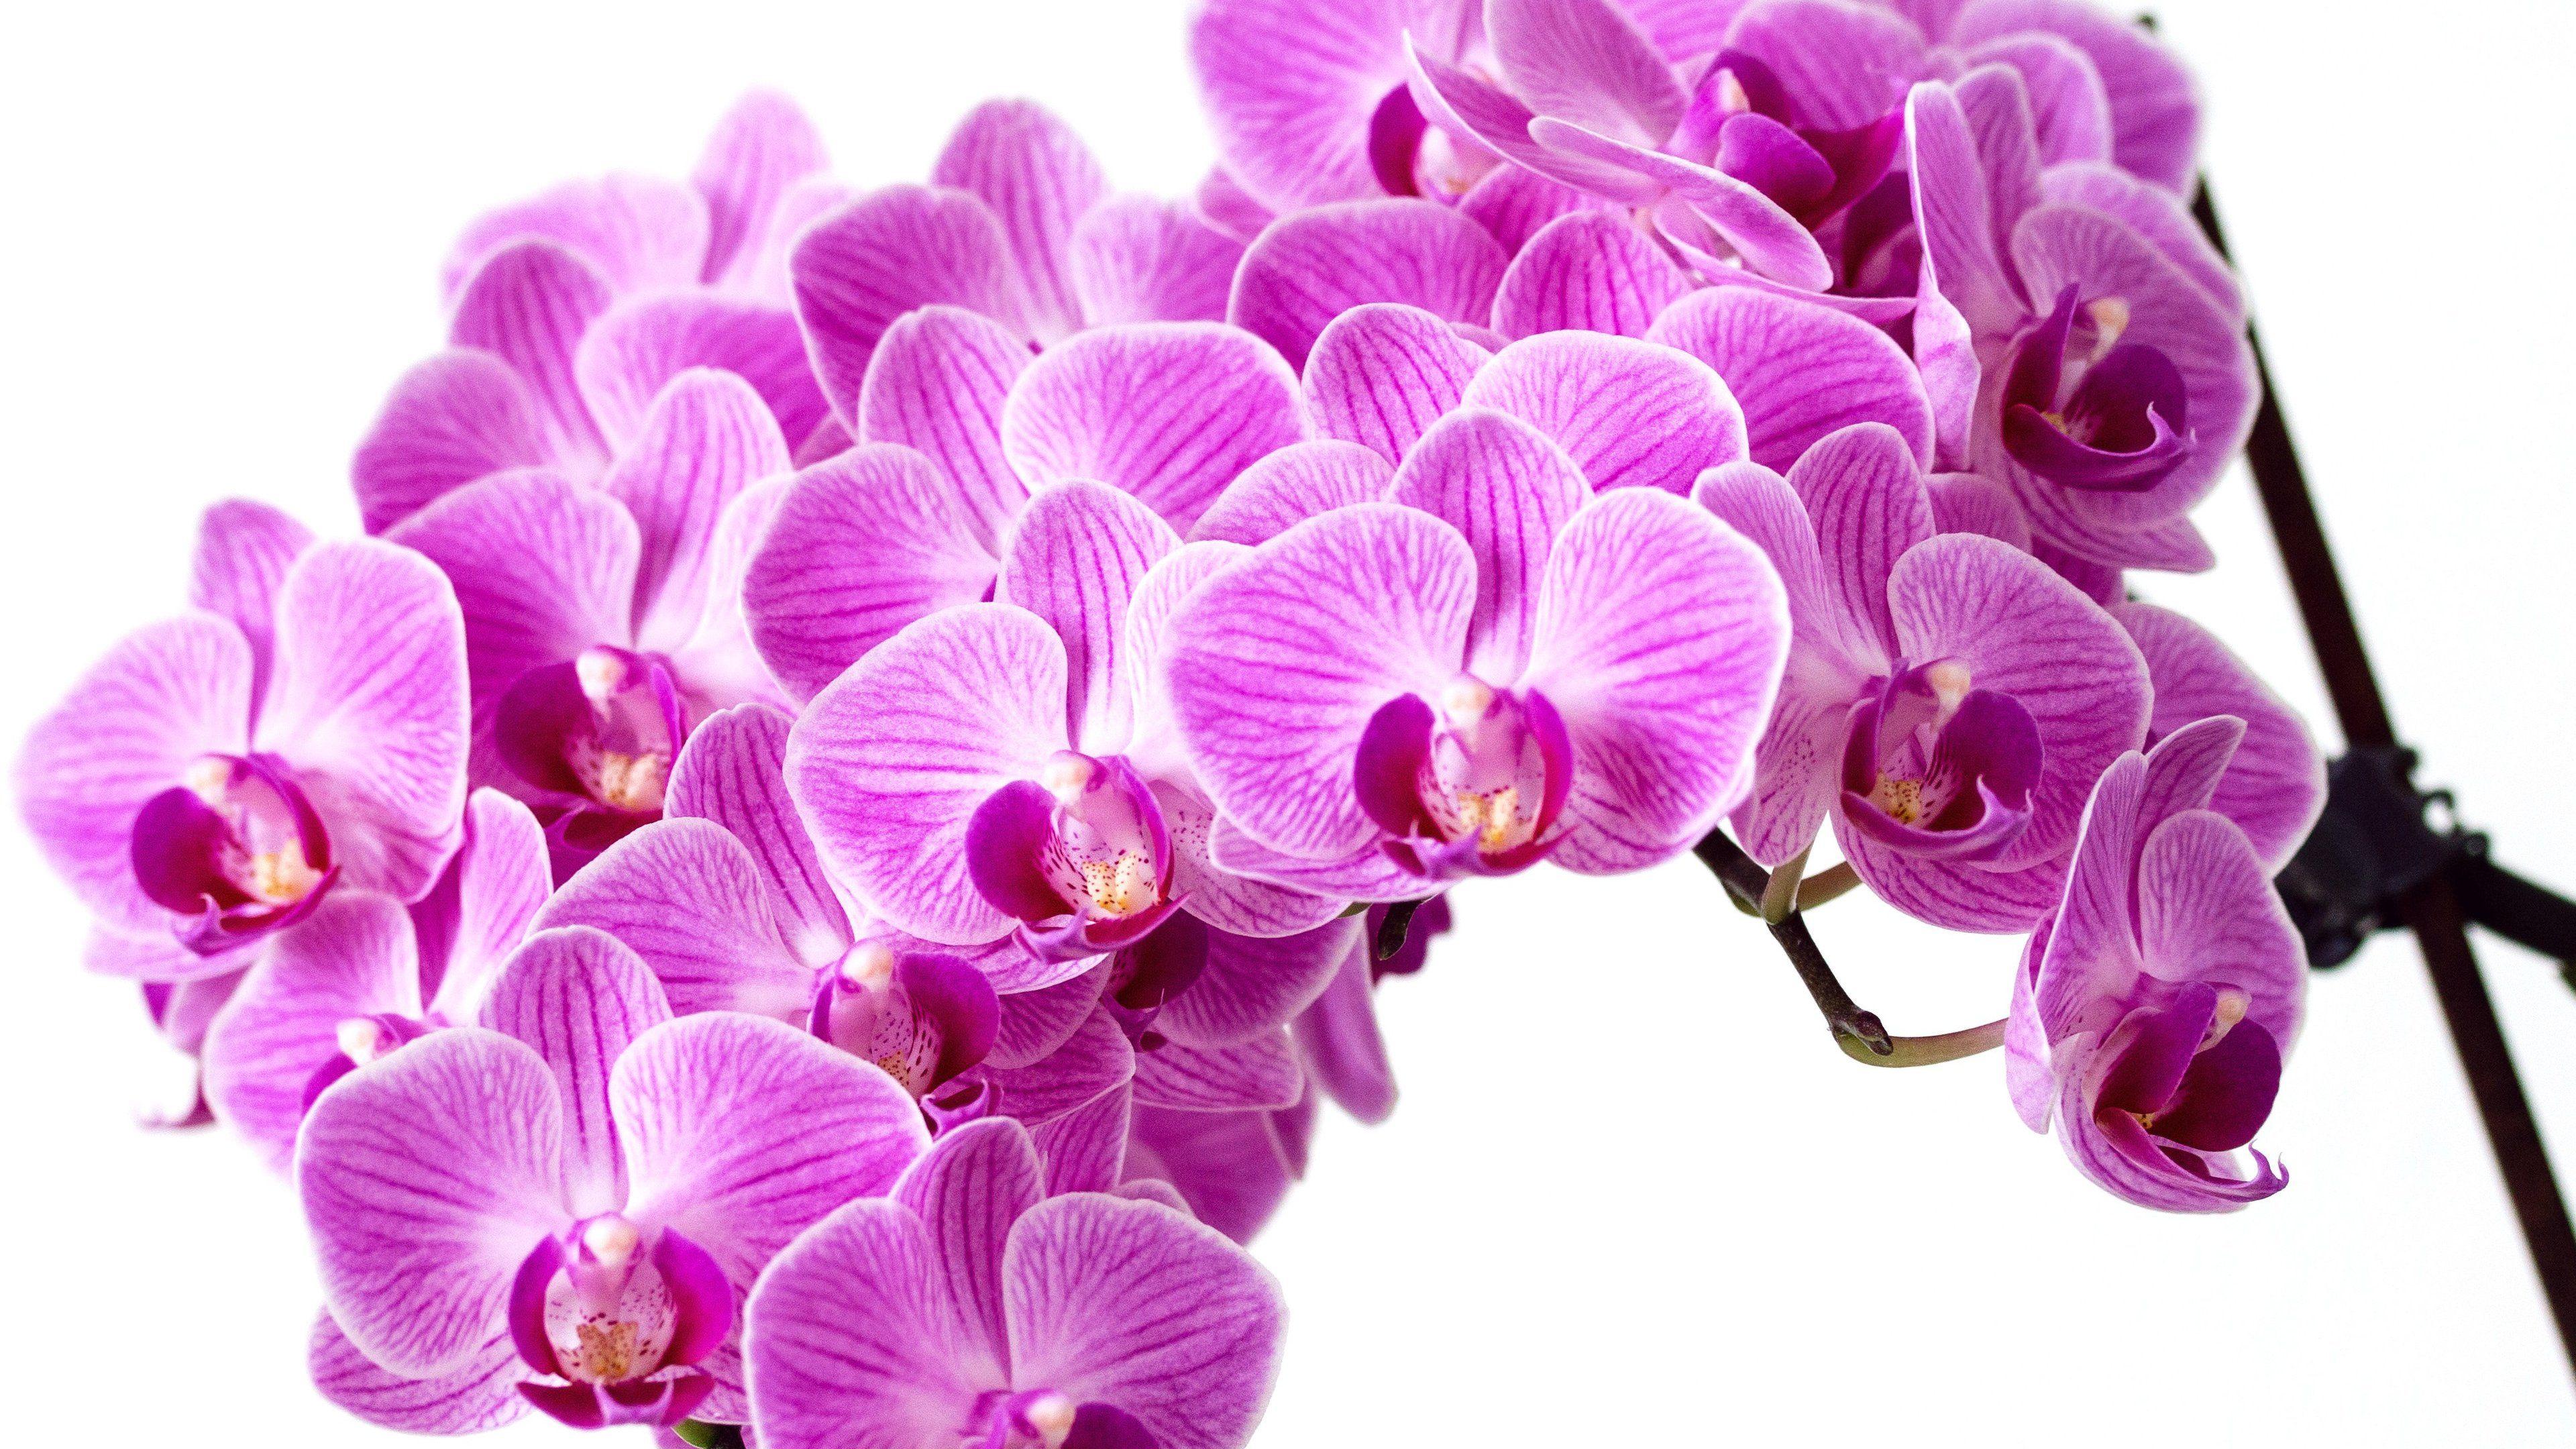 Orchid  Flowers Wallpaper 34014998  Fanpop  Pink flowers wallpaper Orchid  wallpaper Flower pictures